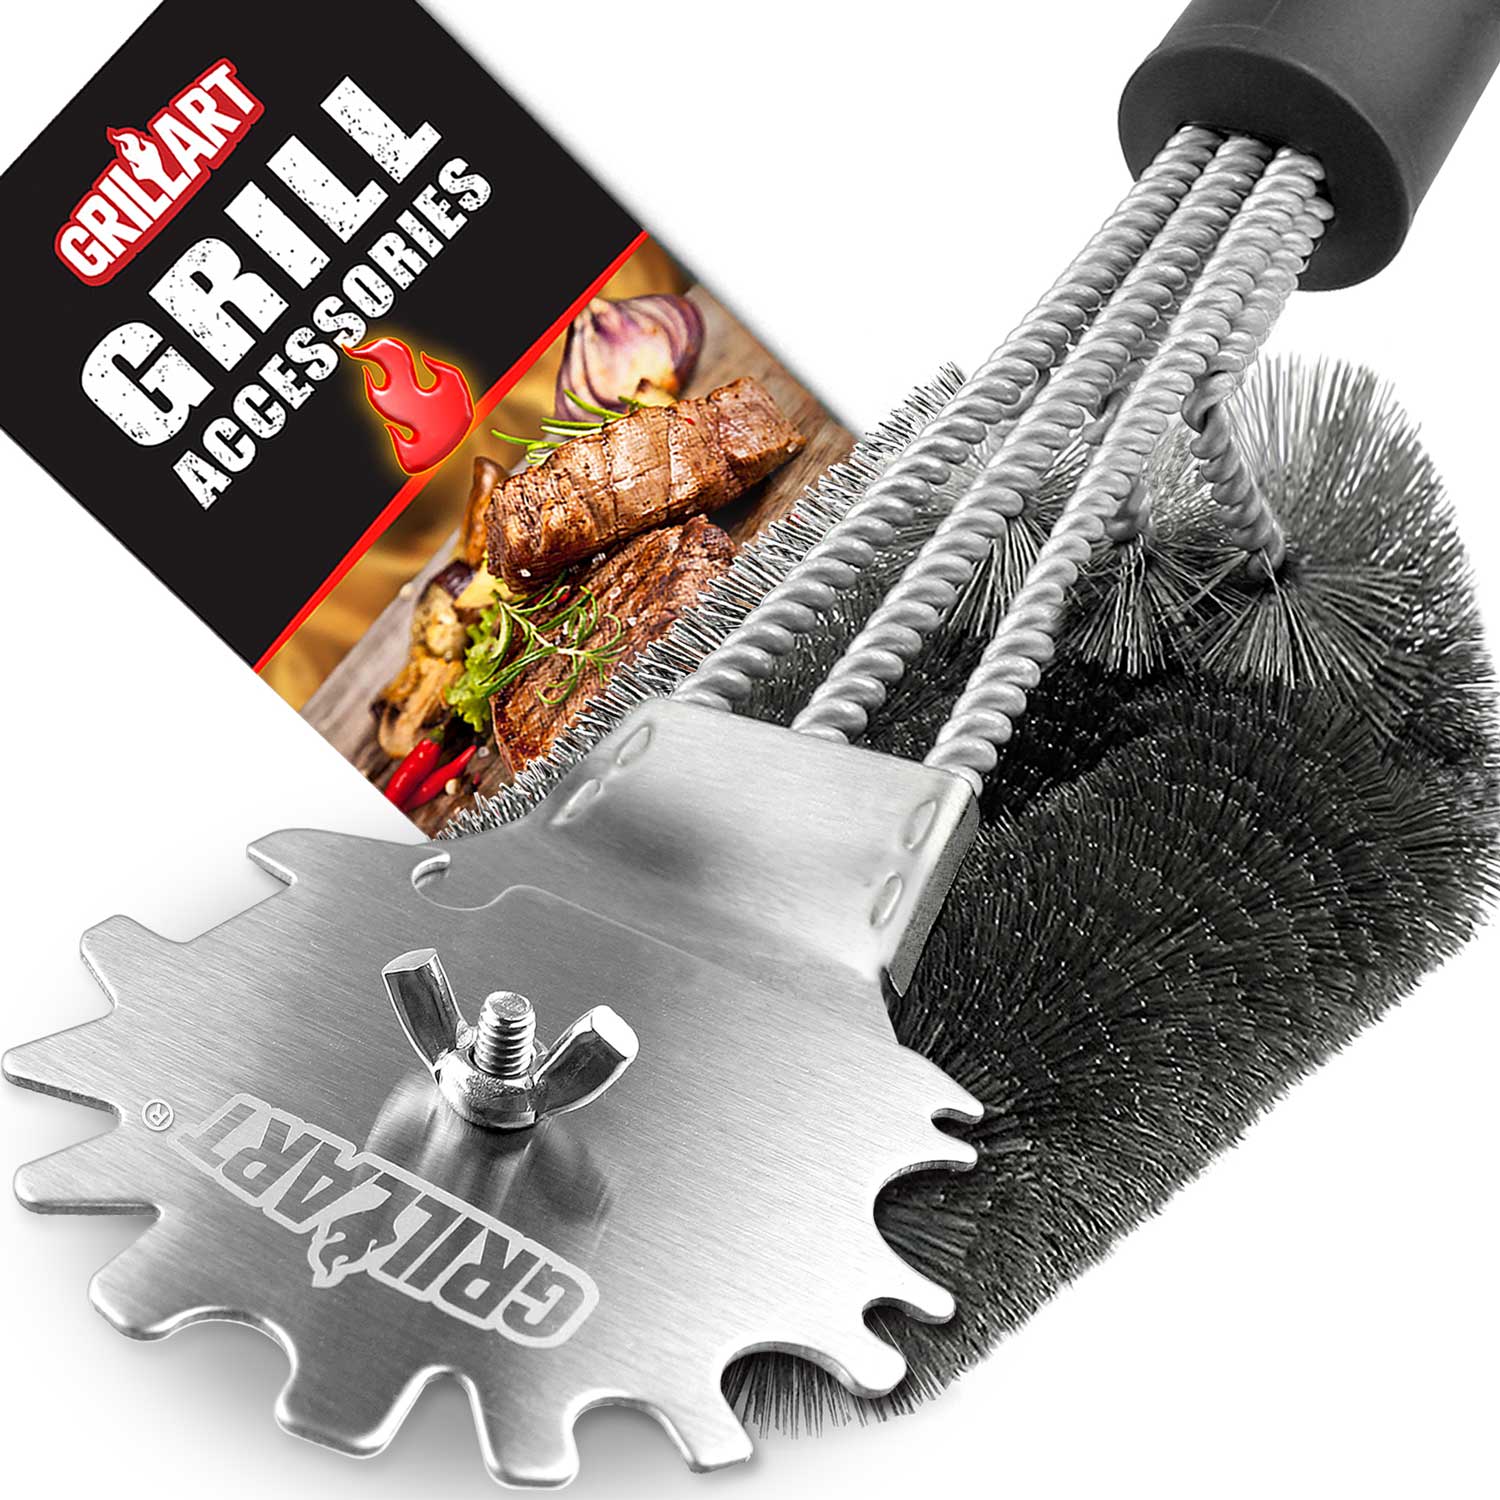 GRILLART Grill Brush and Scraper Bristle Free, 17-Inch Grill